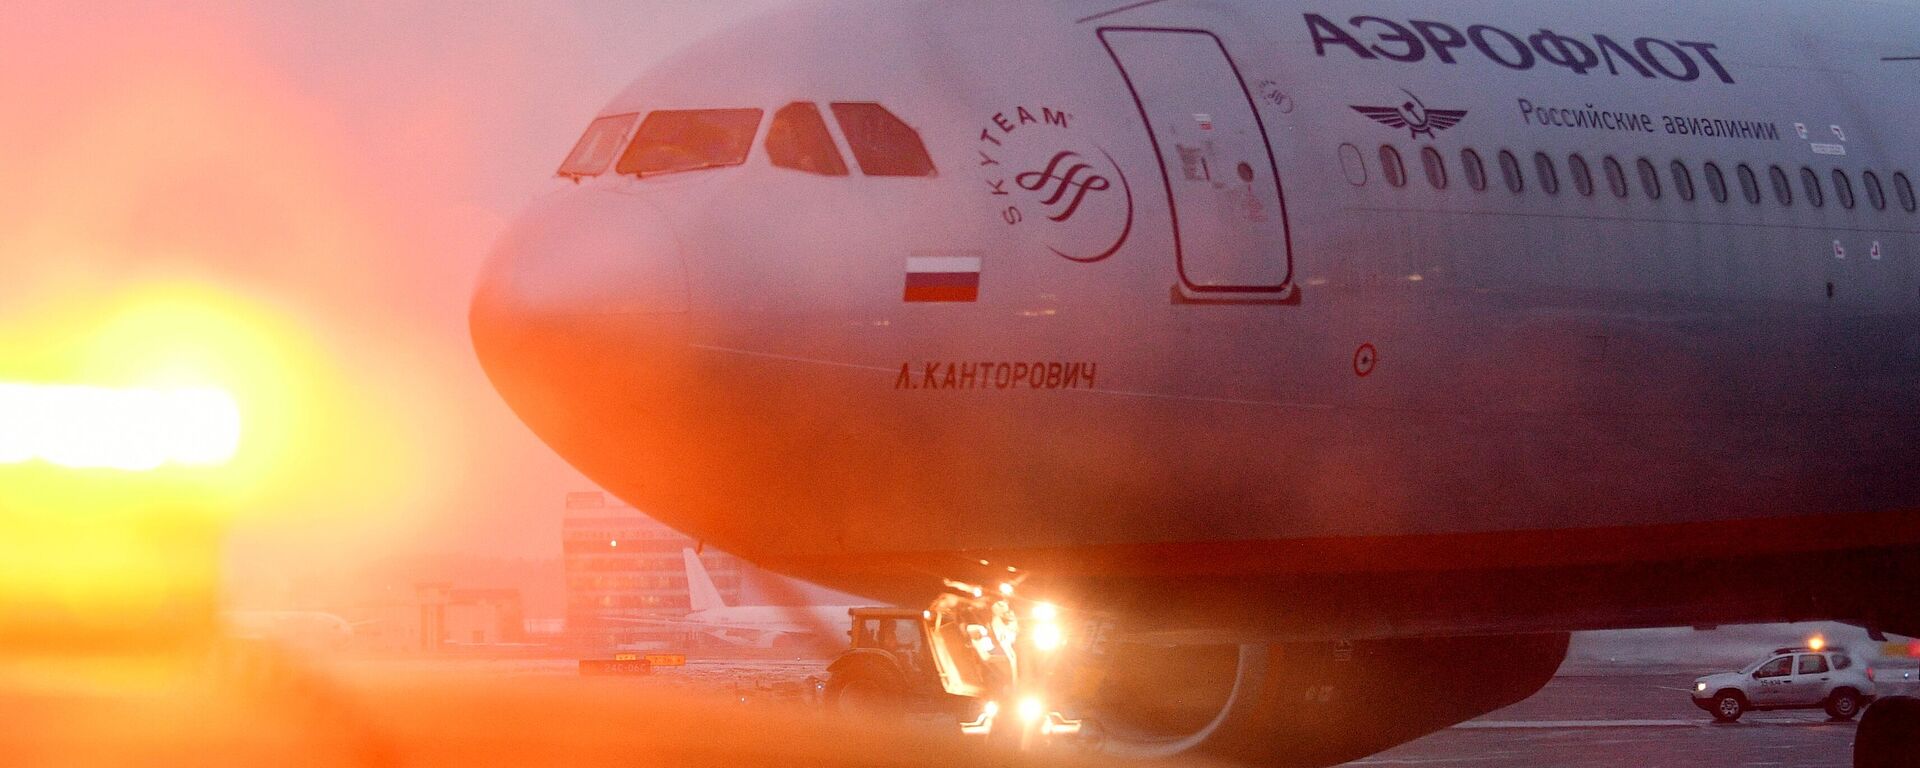 Samolet aviakompanii Aeroflot na vzletnoy polose Mejdunarodnogo aeroporta Sheremetyevo - Sputnik O‘zbekiston, 1920, 05.10.2021